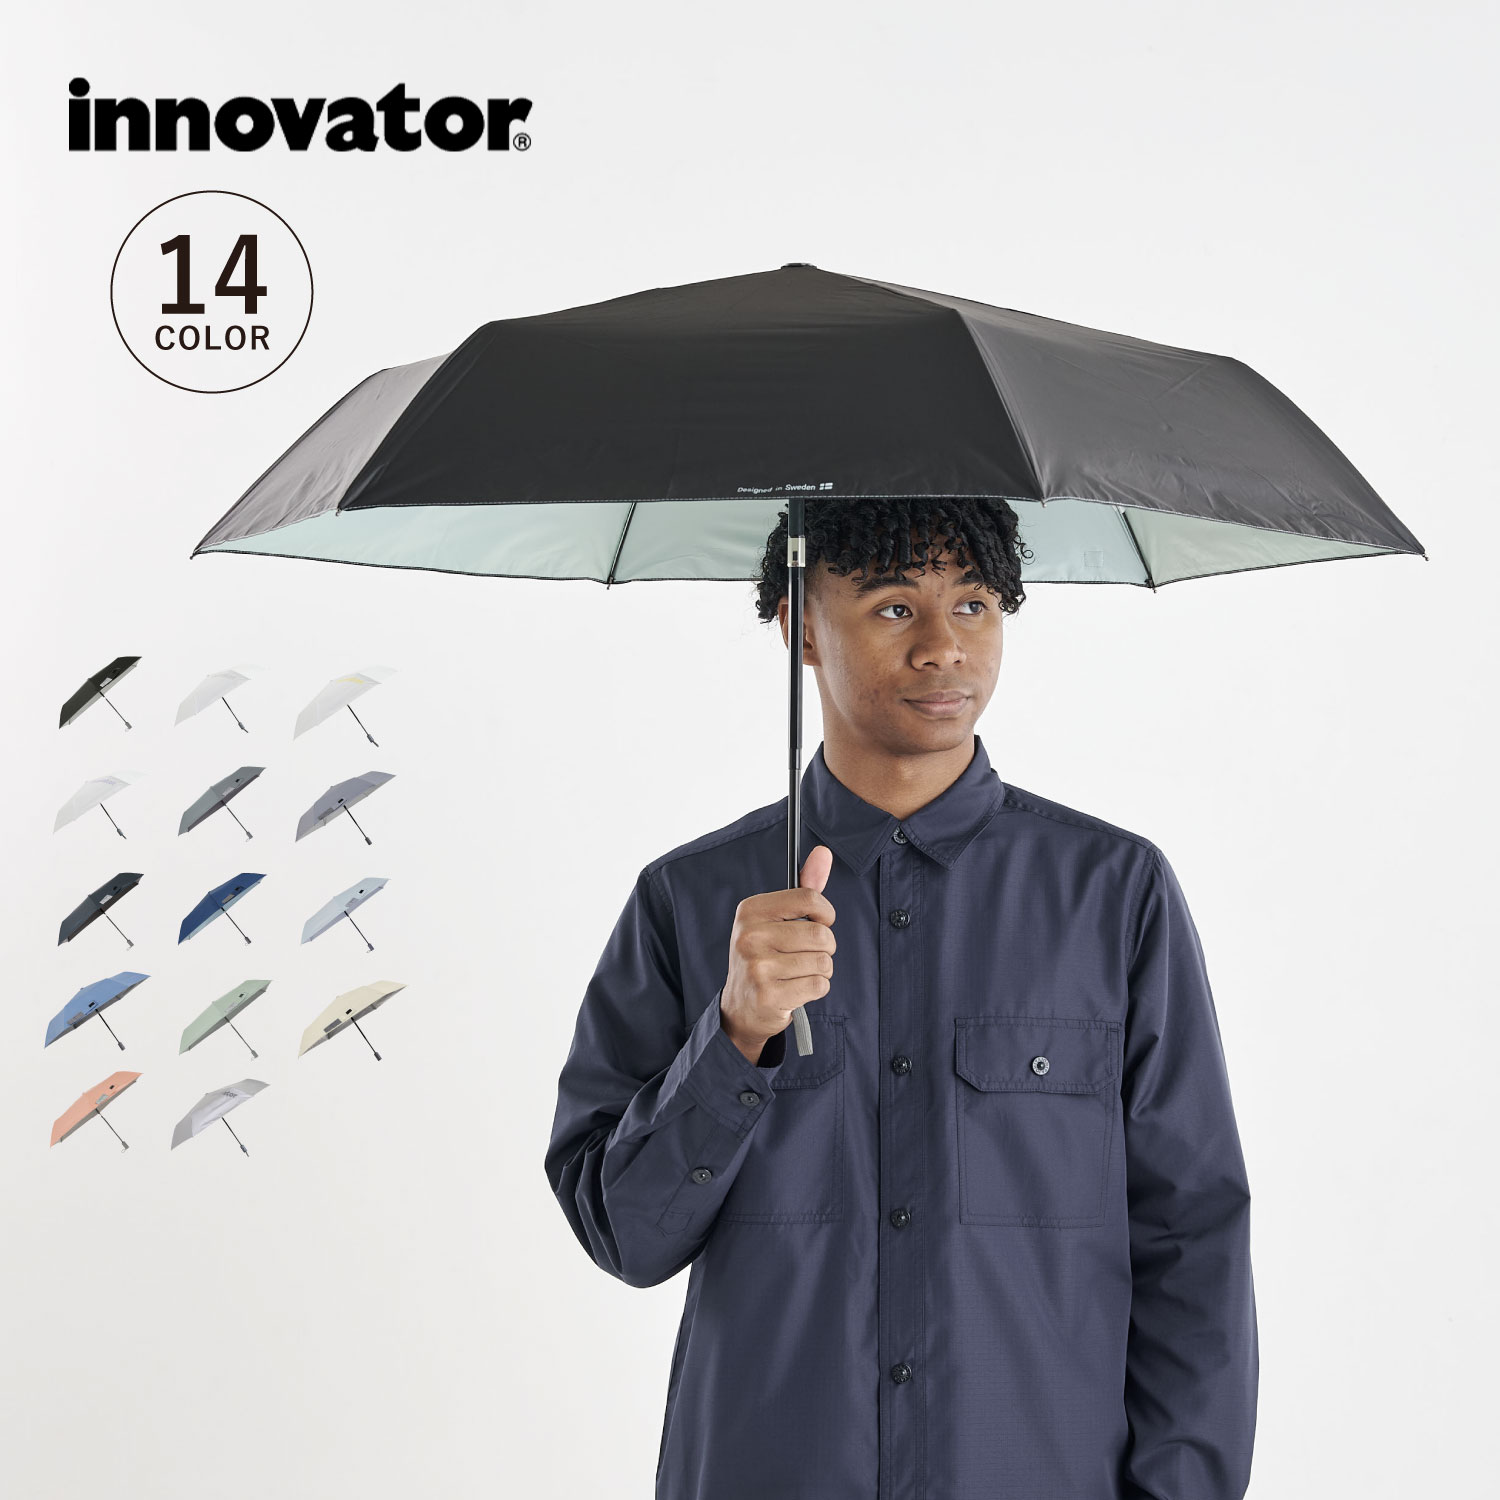 【最大1000円OFFクーポン配布中】 innovator UMBRELLA イノベーター 折りたたみ傘 折り畳み傘 遮光 晴雨兼用 UVカット メンズ レディース 雨傘 傘 雨具 55cm ワンタッチ 無地 撥水 IN-55WJP 母の日